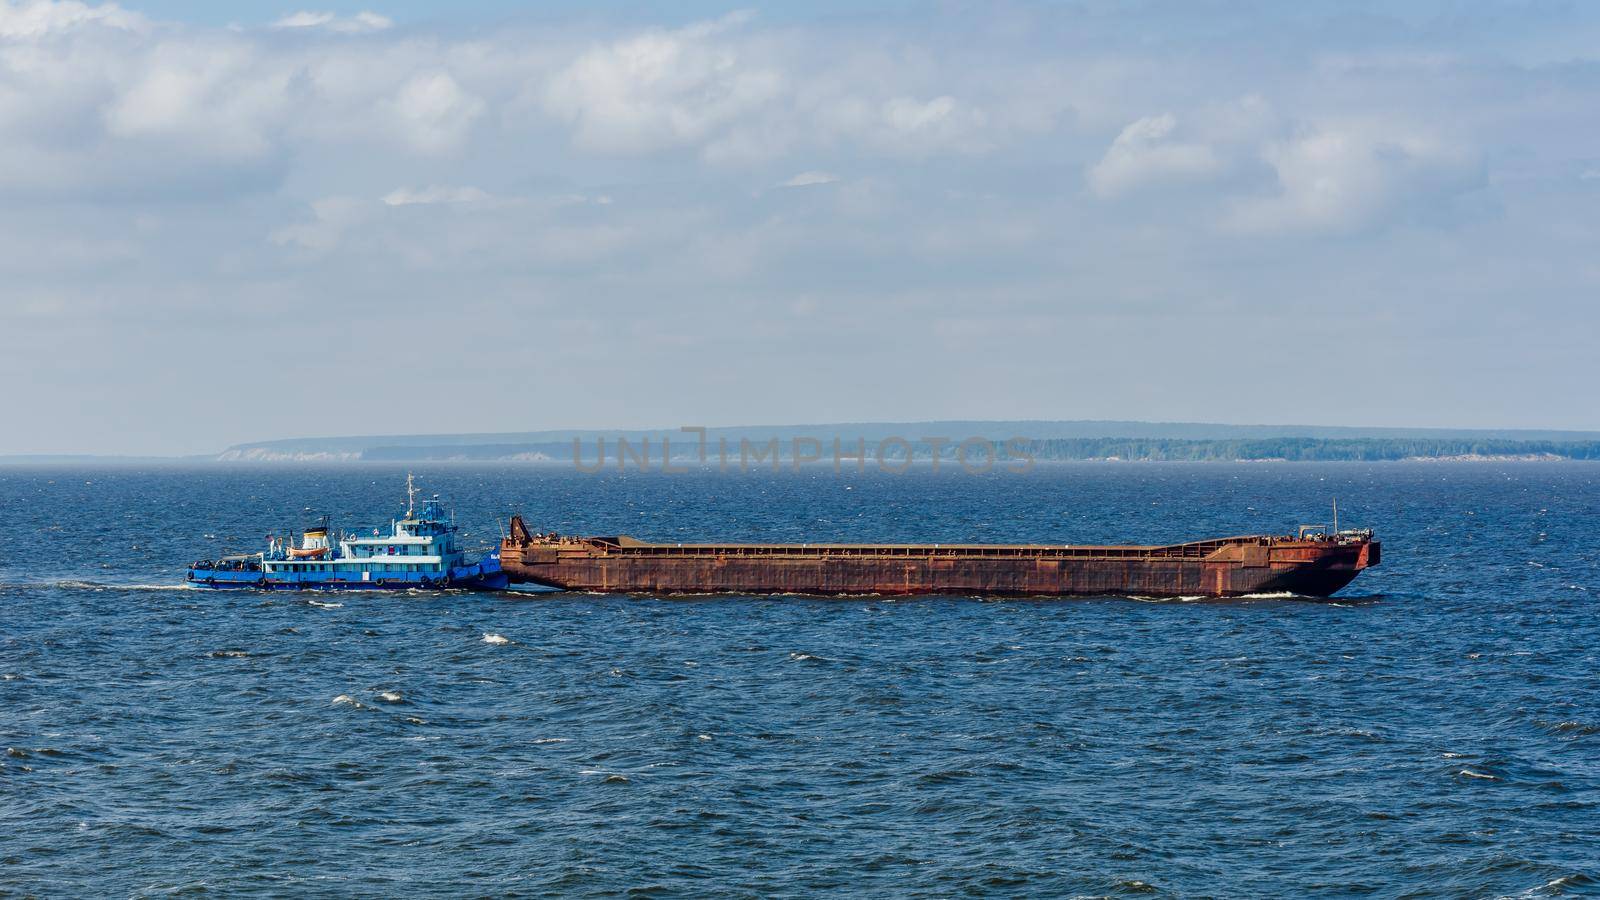 Blue cargo ship on the Volga river